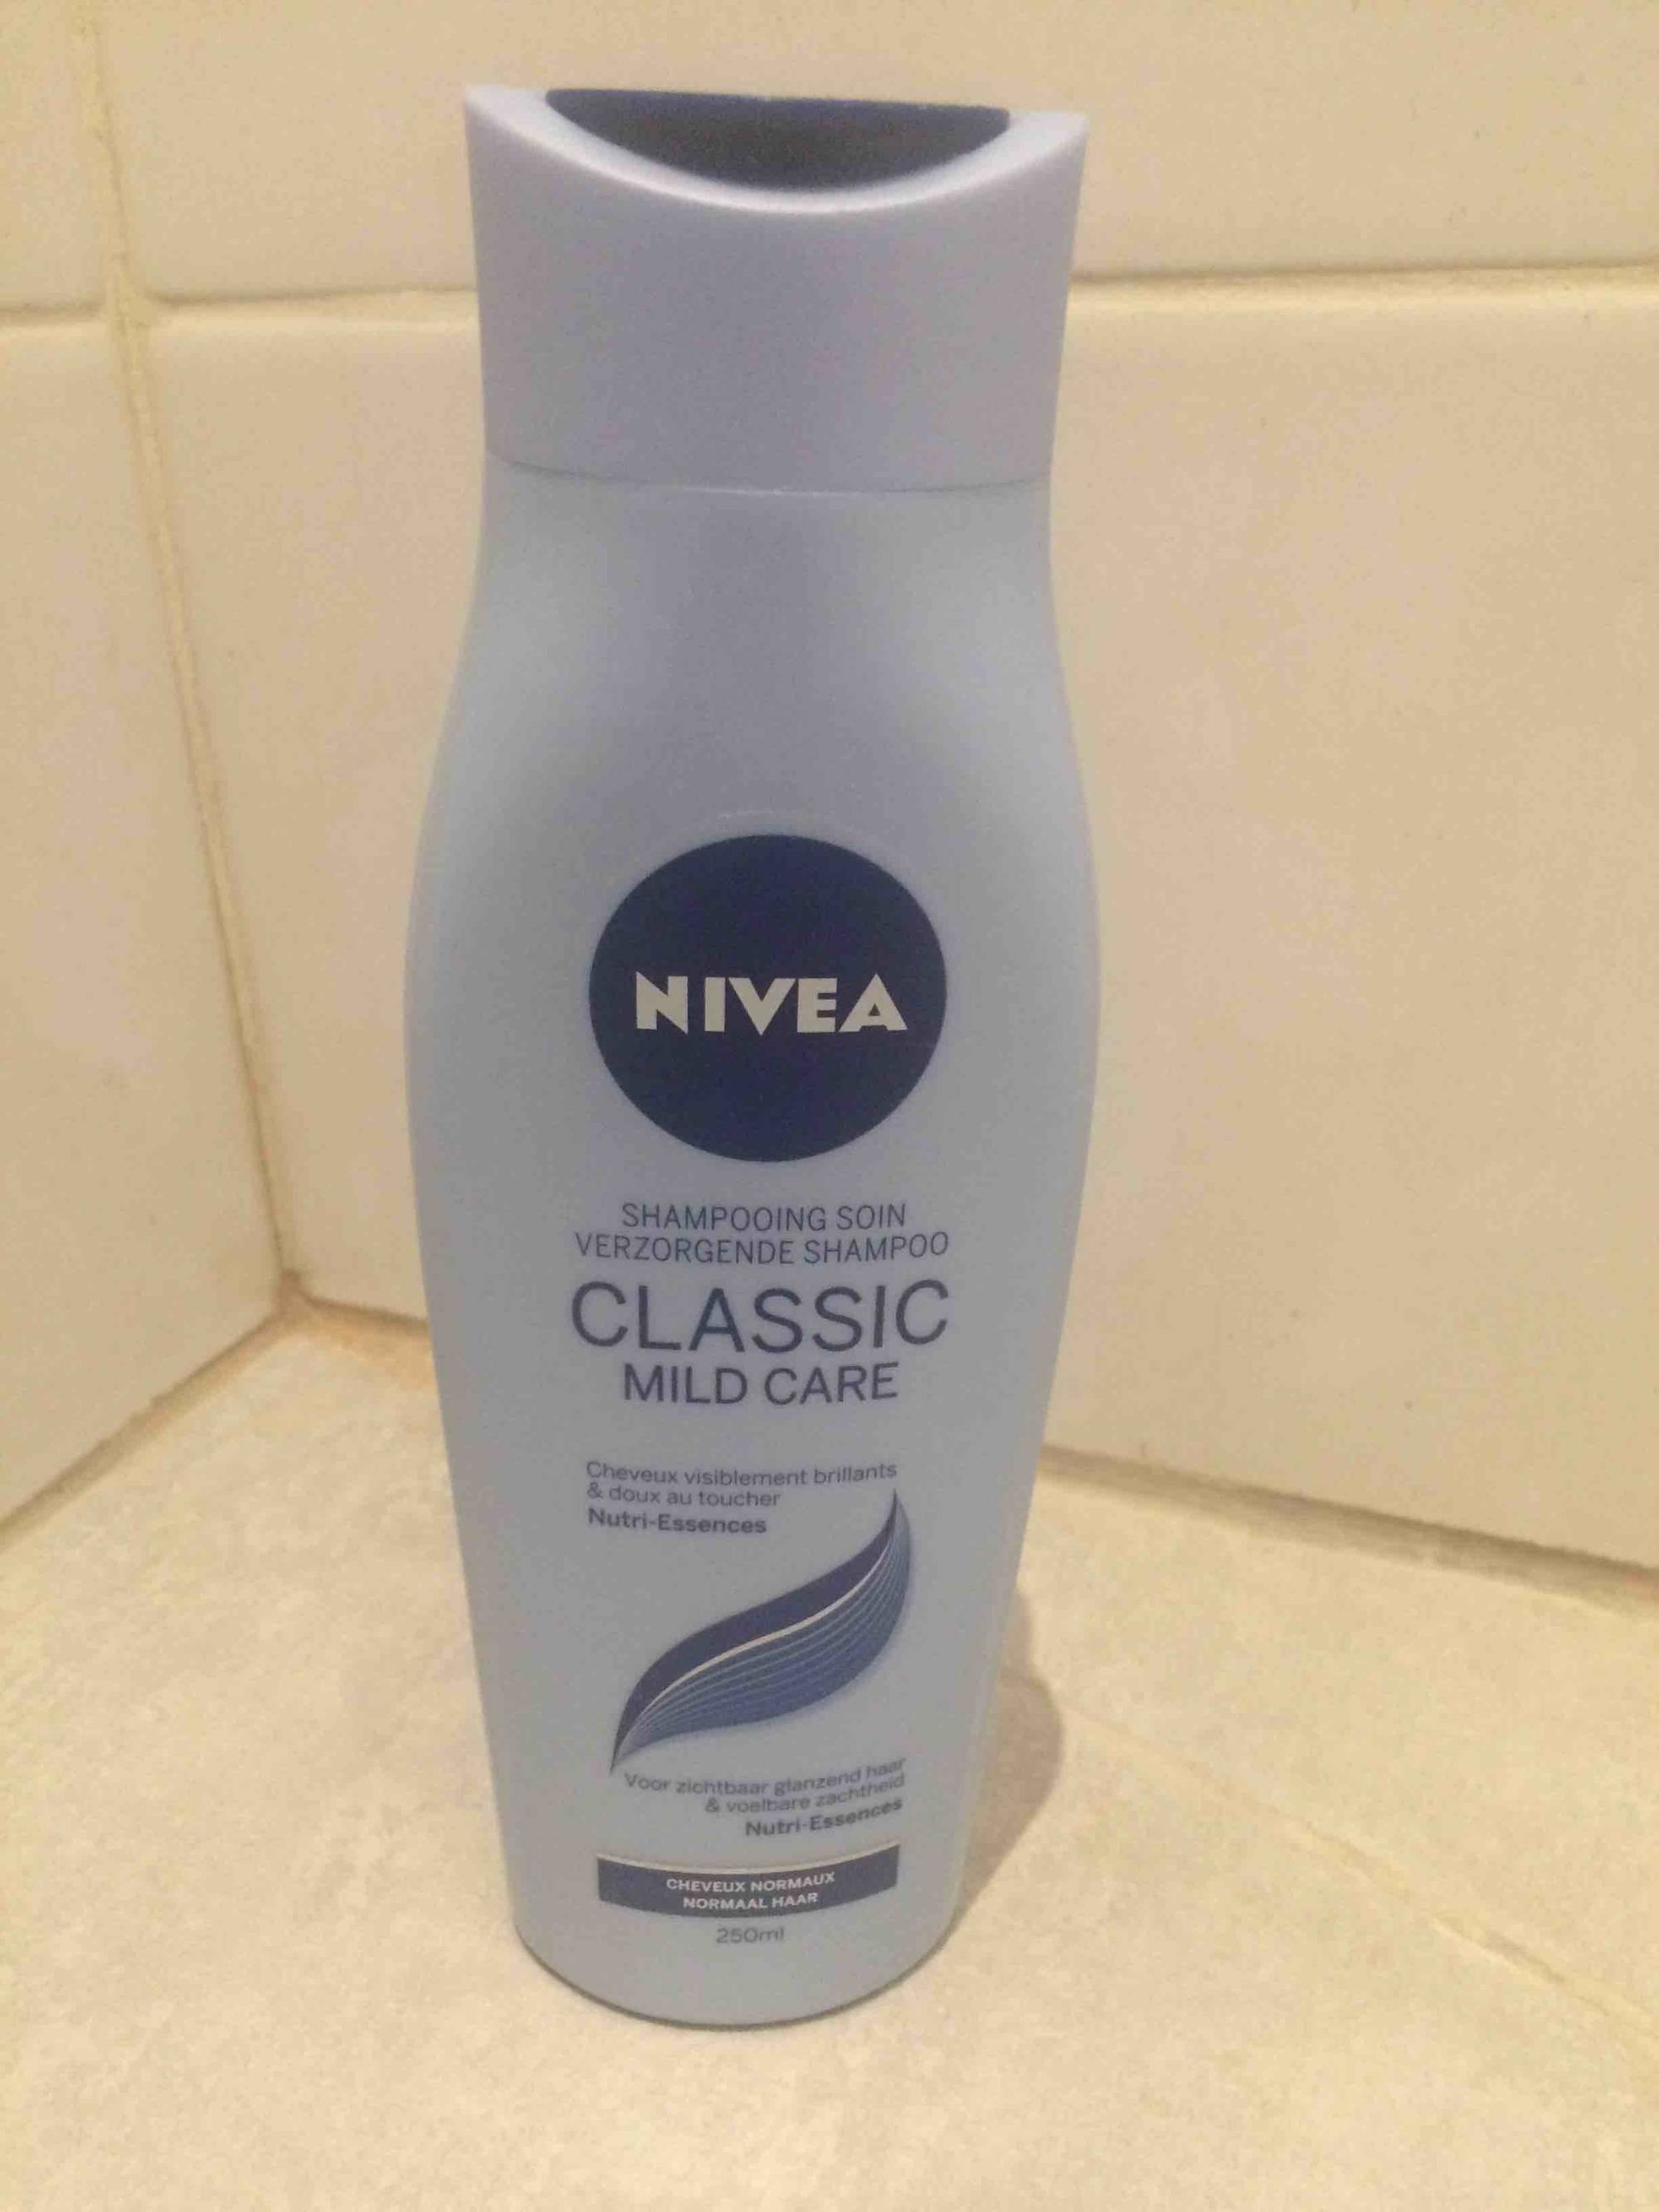 NIVEA - Classic mild care - Shampooing soin